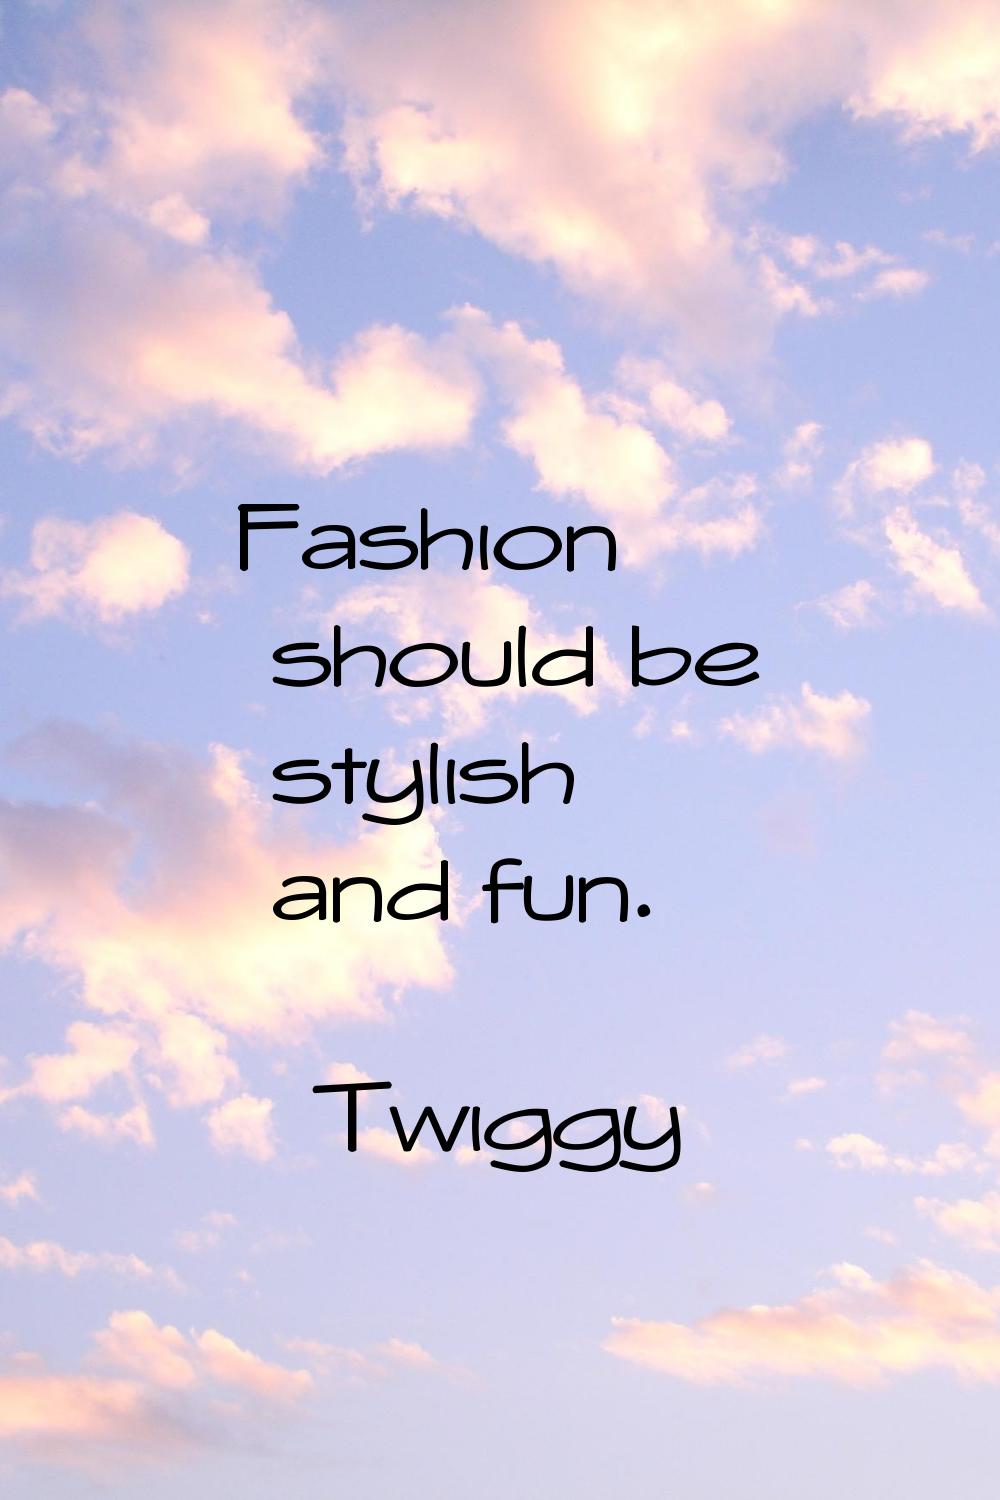 Fashion should be stylish and fun.